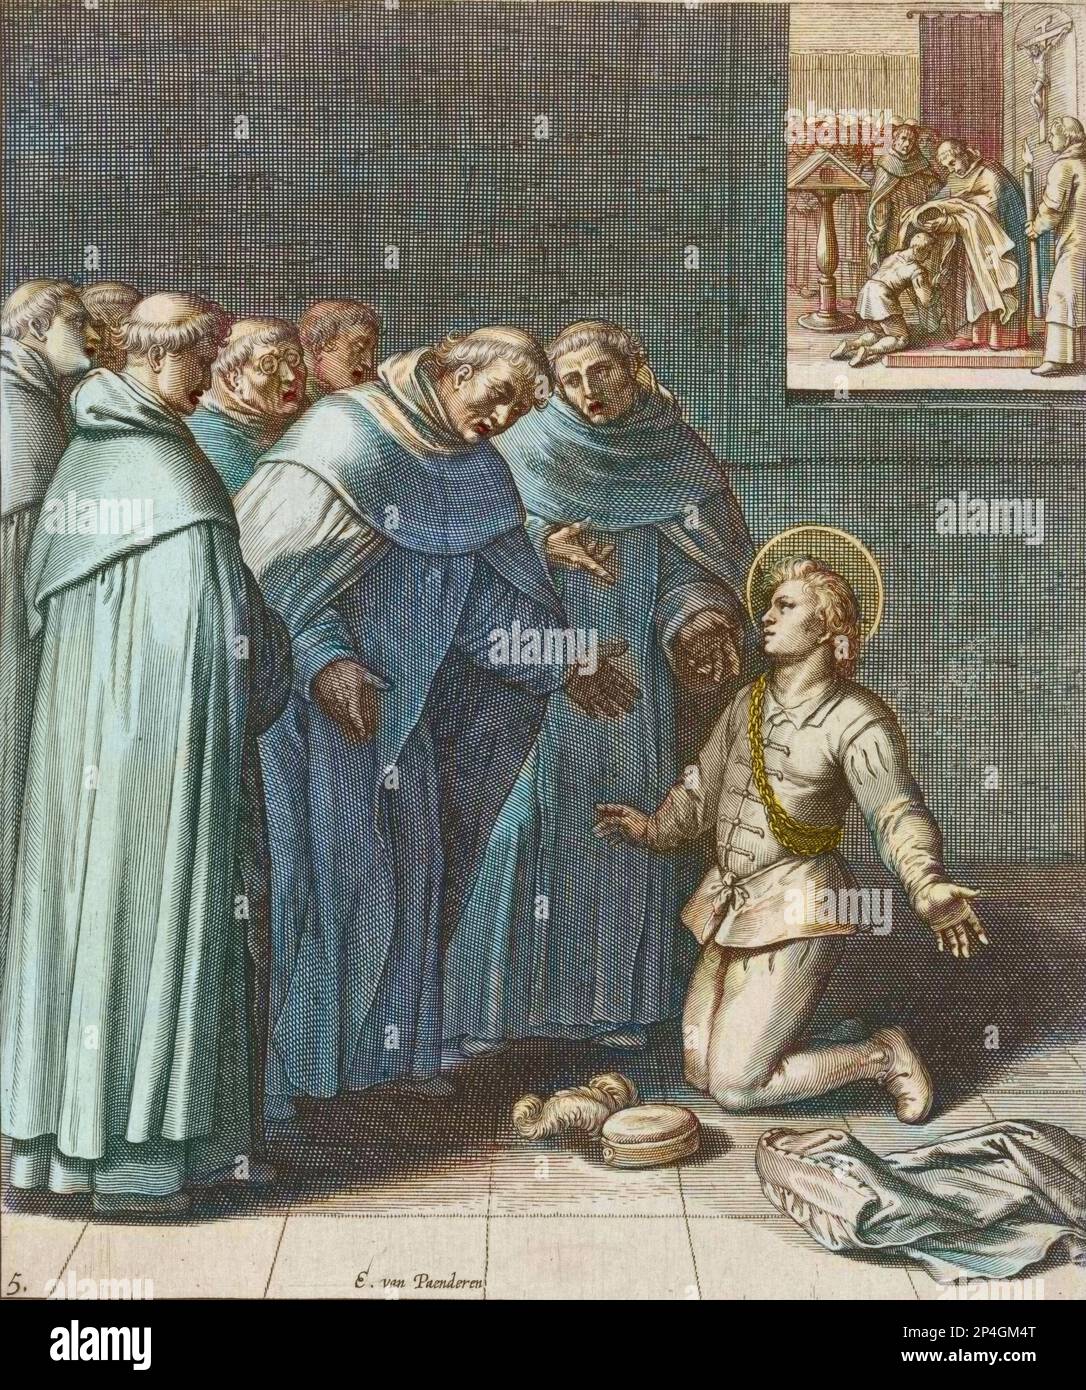 Saint Thomas d'Aquin rejoint l'ordre dominicain - Saint Thomas d'Aquin (1225-1274) docteur de l'eglise (Thomas Aquinas or Tommaso d'Aquino) -  gravure d'après Egbert van Panderen Stock Photo